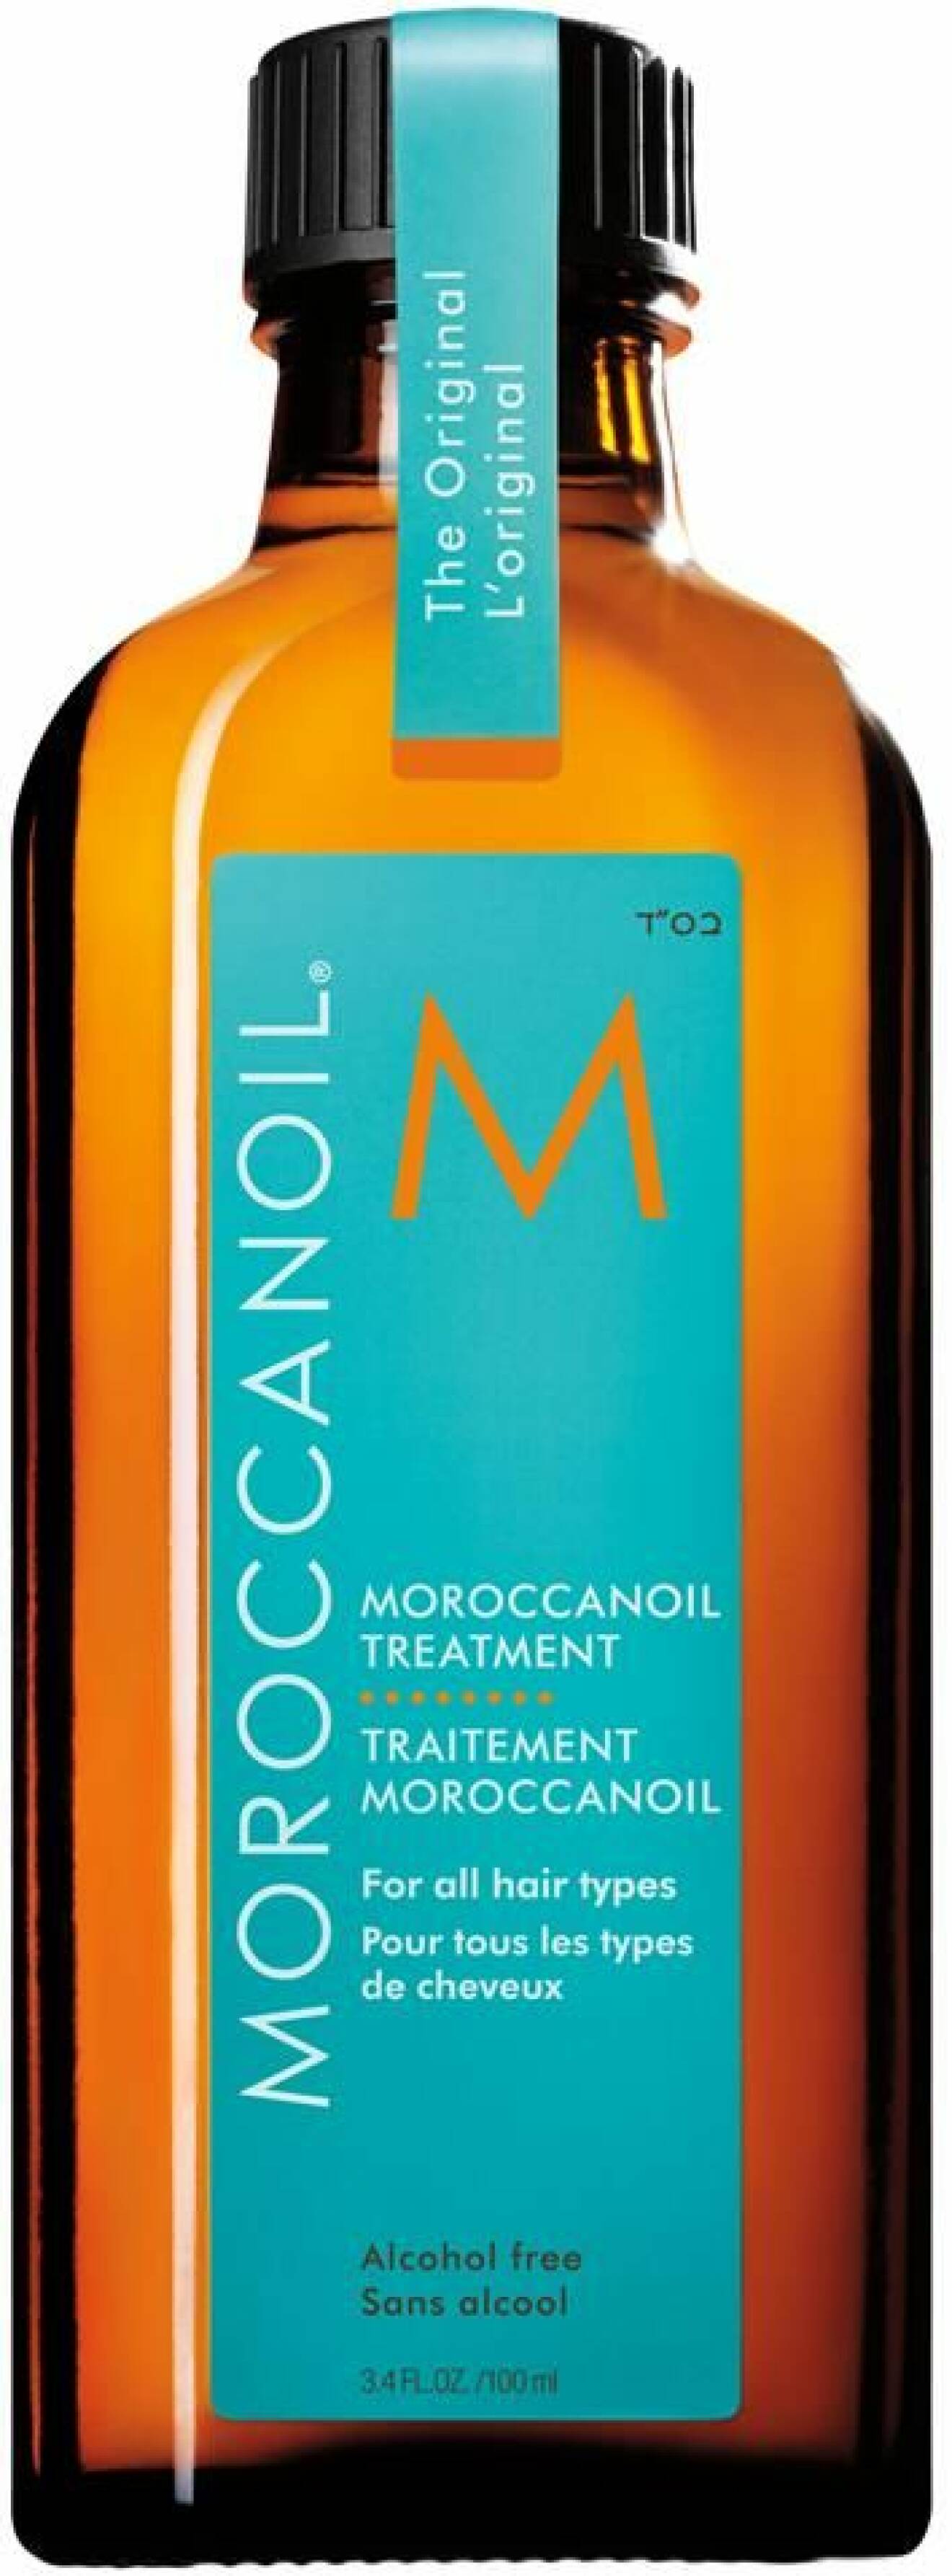 Moroccan oil, Original treatment. 